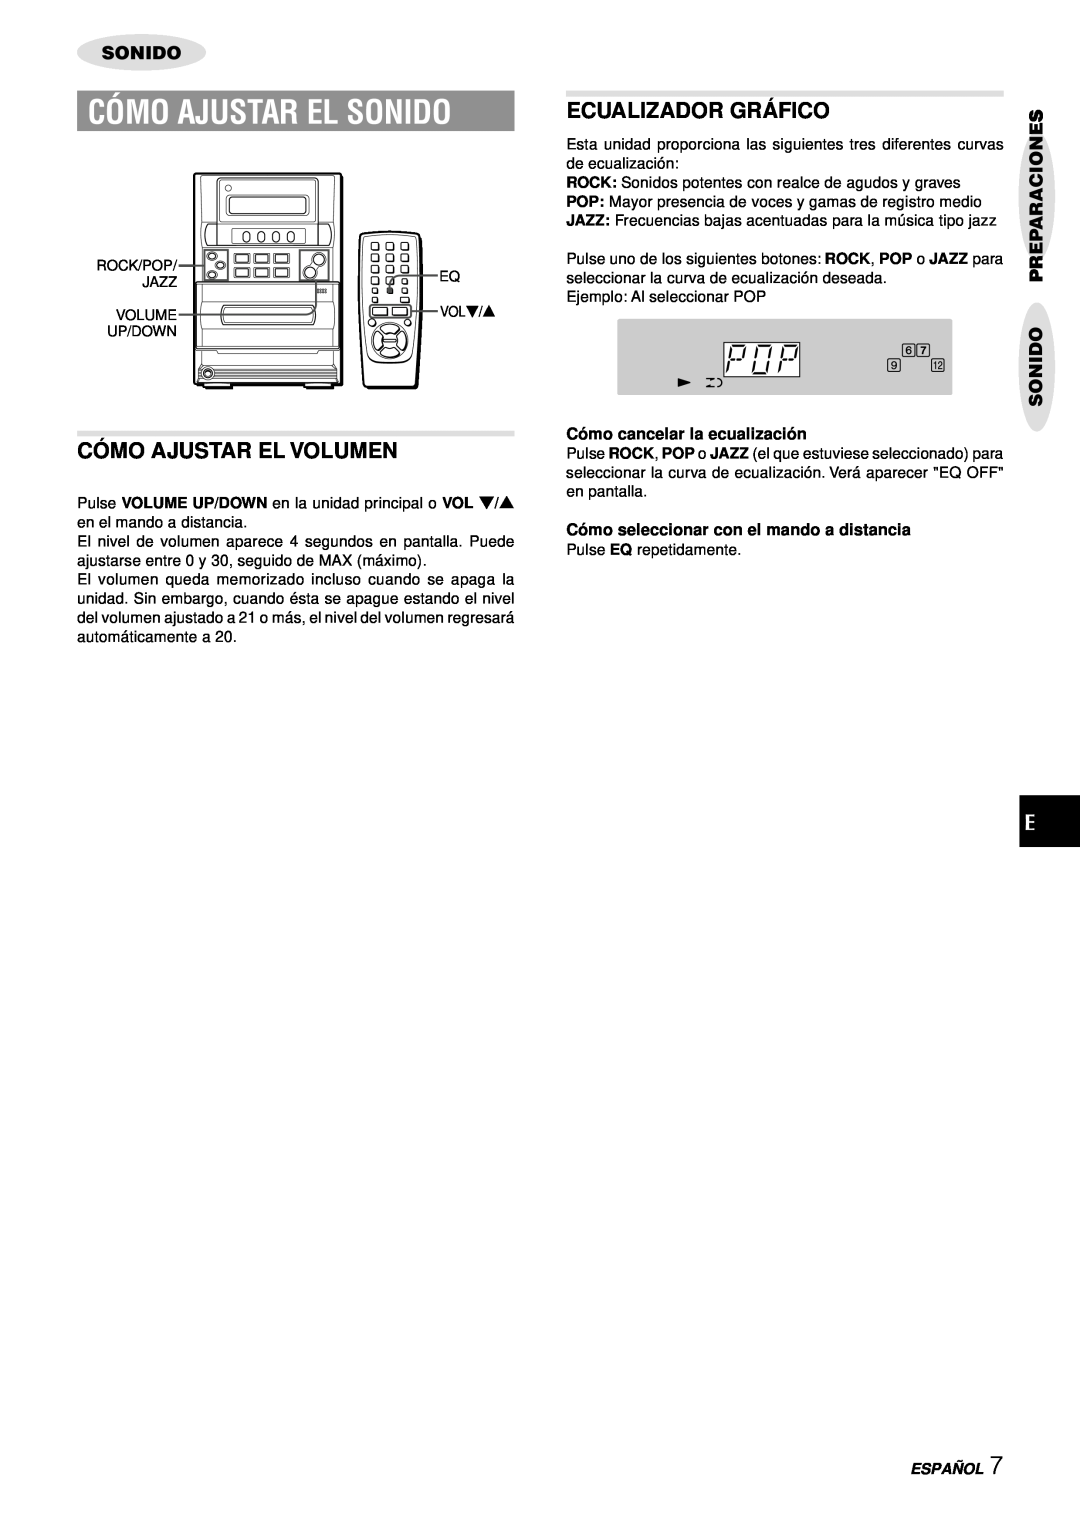 Aiwa LCX-357 manual Cómo Ajustar El Sonido, Có Mo Ajustar El Volumen, Ecualizador Grá Fico, Sonido Preparaciones, Españ Ol 